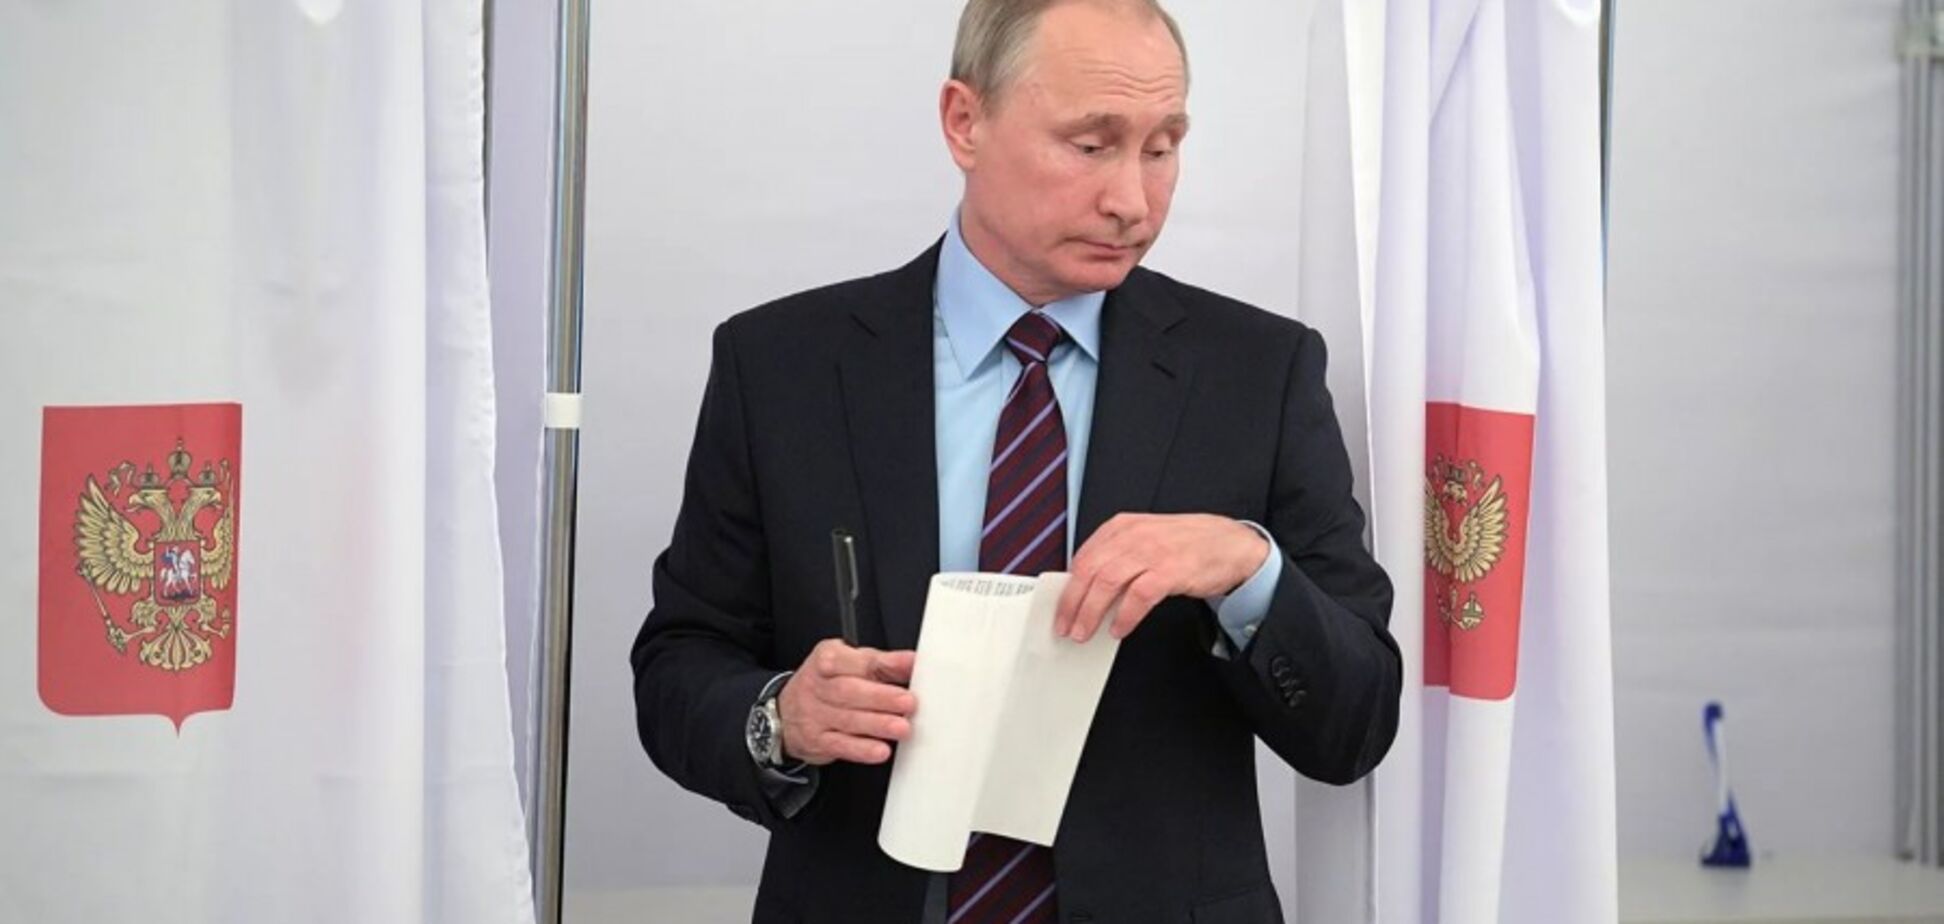  Художник высмеял 'выборы Путина'